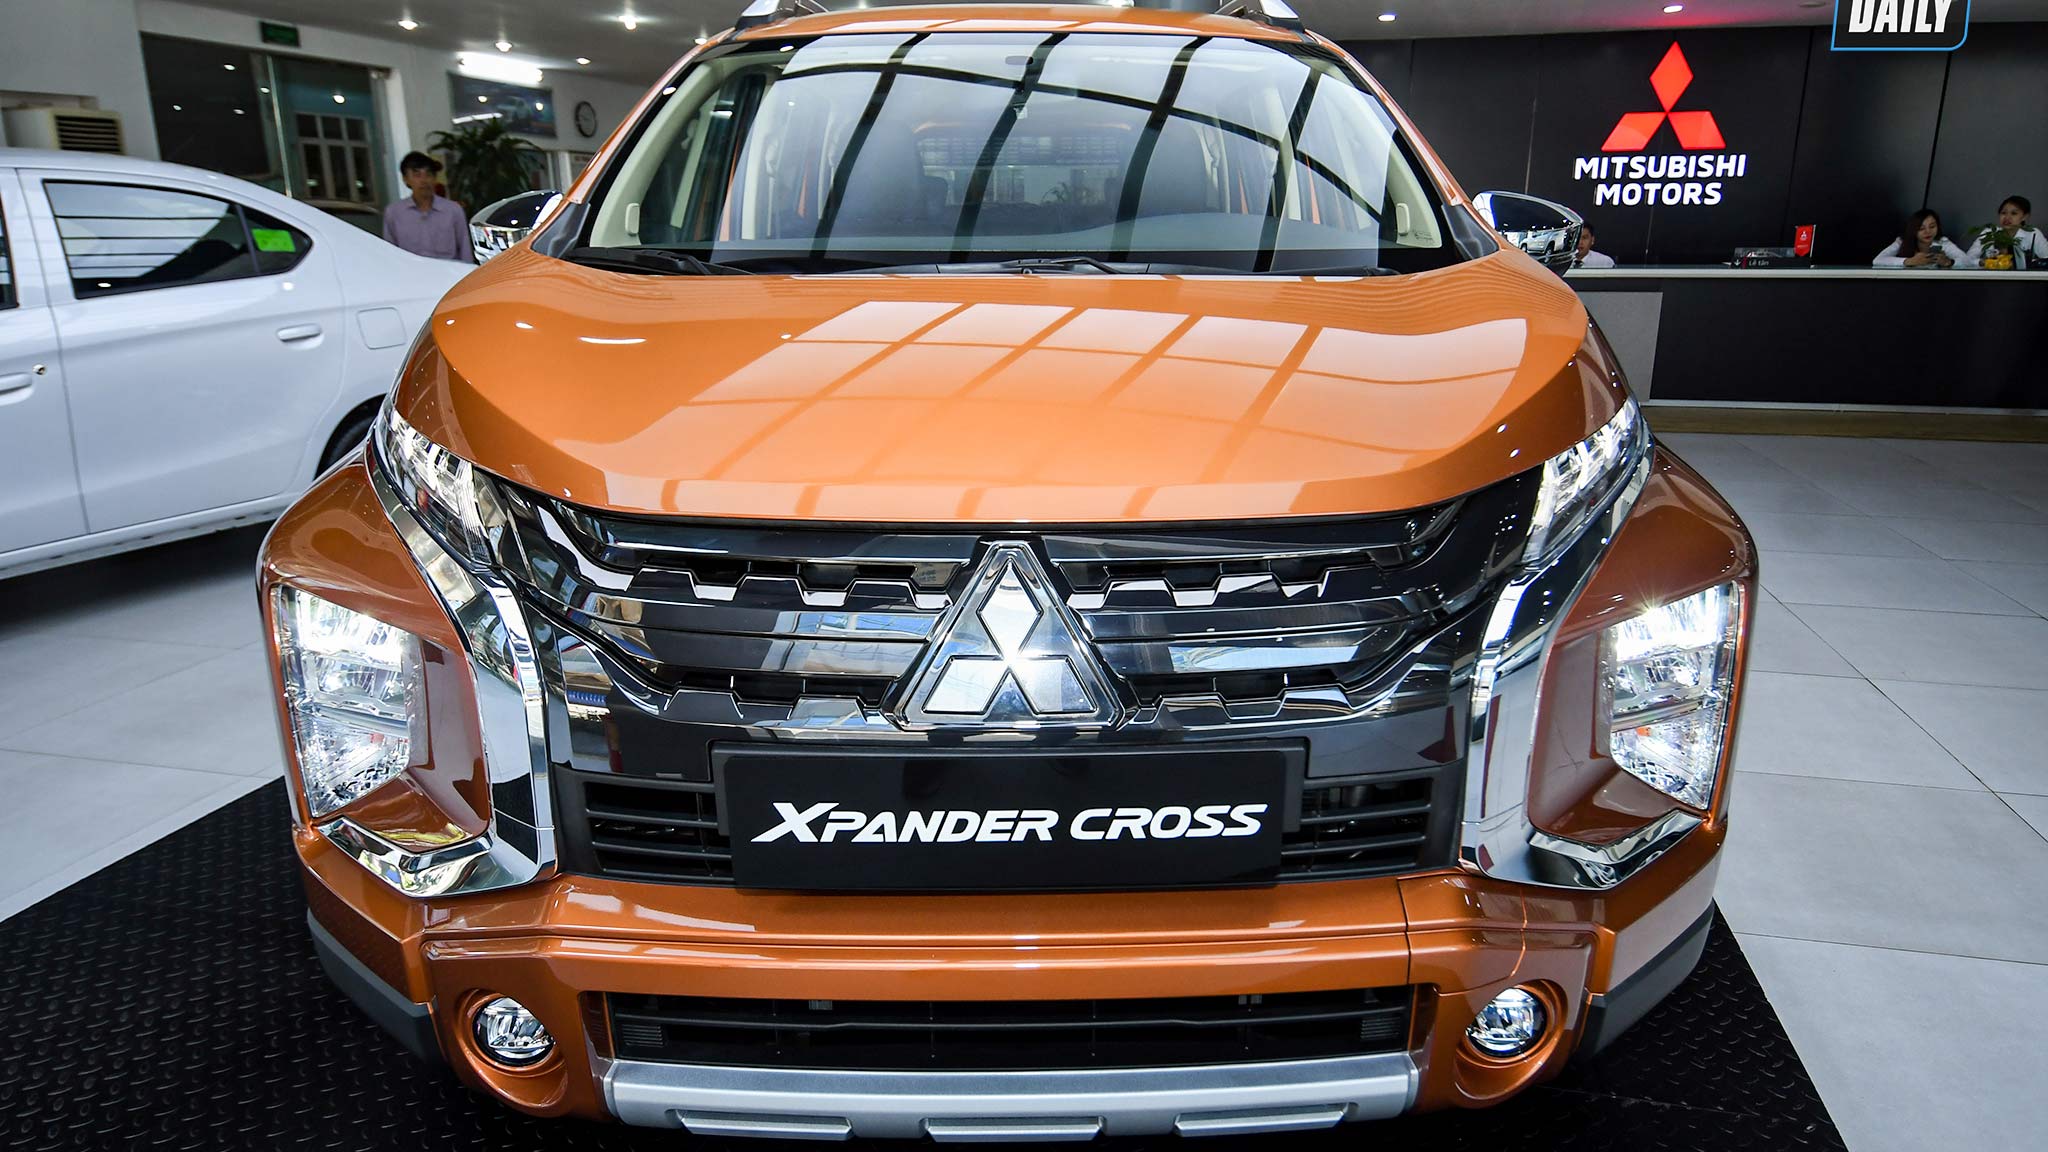 Giá lăn bánh Mitsubishi Xpander Cross 2020 tại Việt Nam